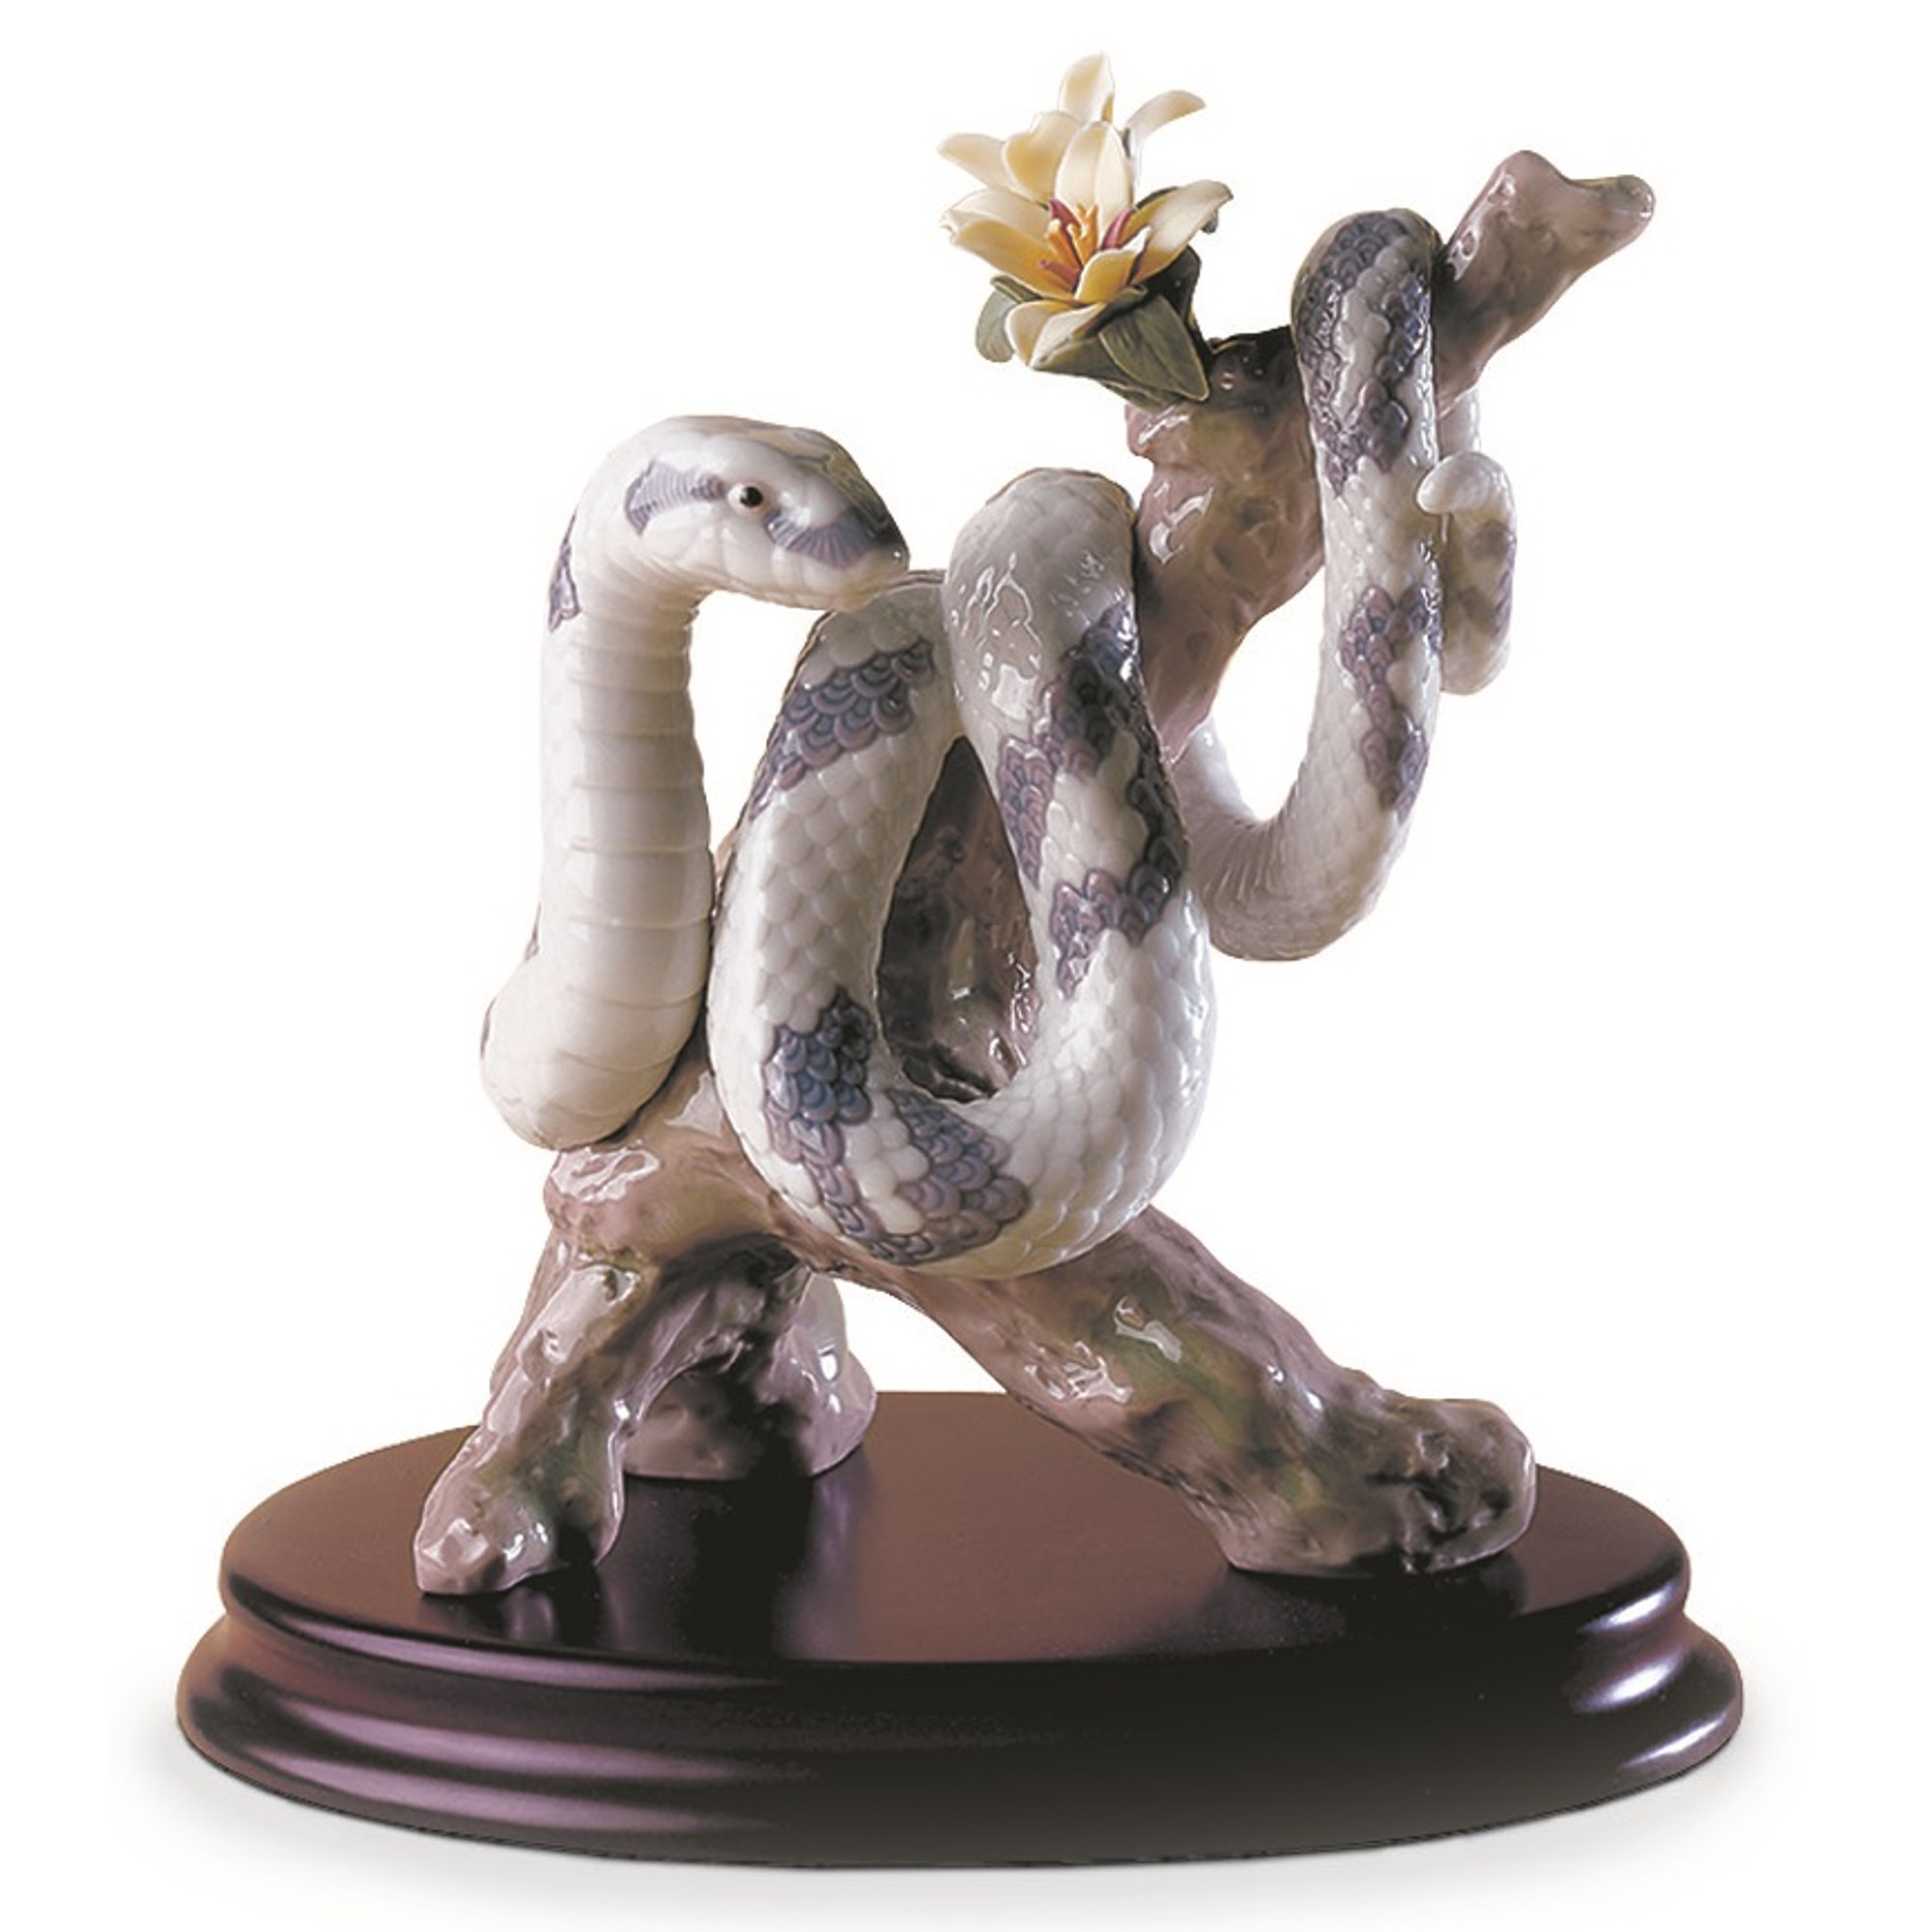 Snake Porcelain Sculpture